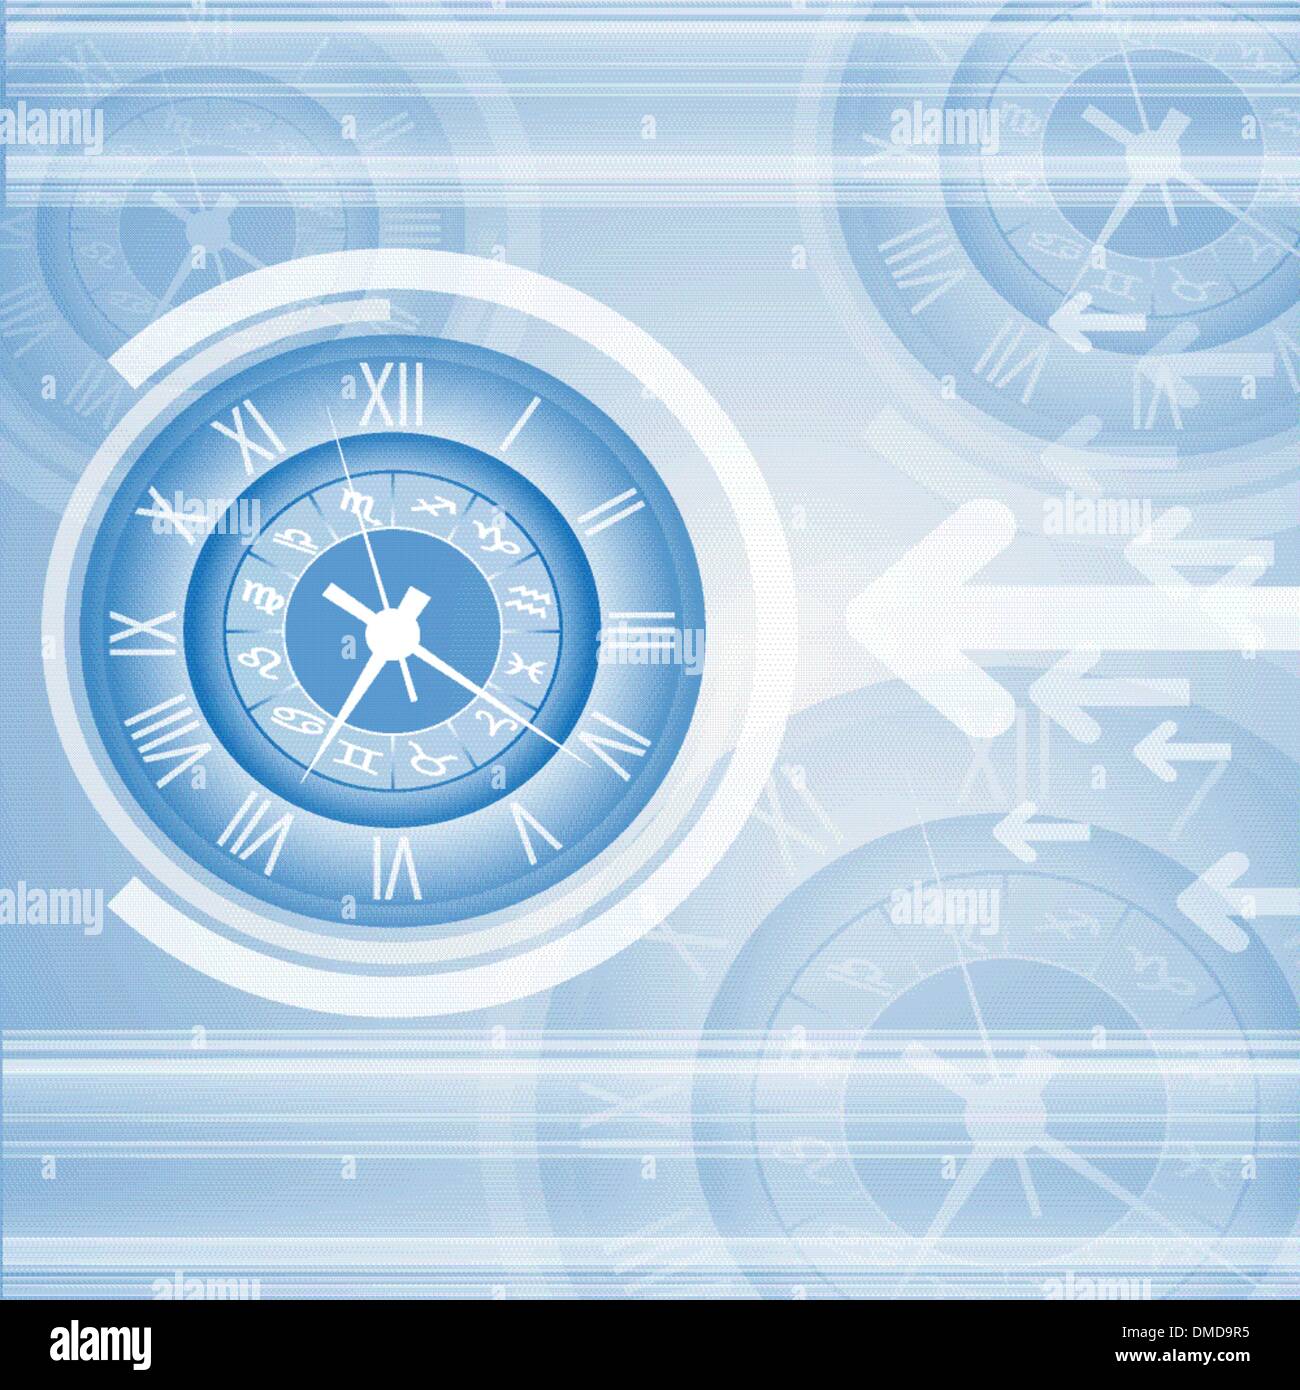 Abstrakte Uhr Vektor und Technik-Hintergrund Stock Vektor